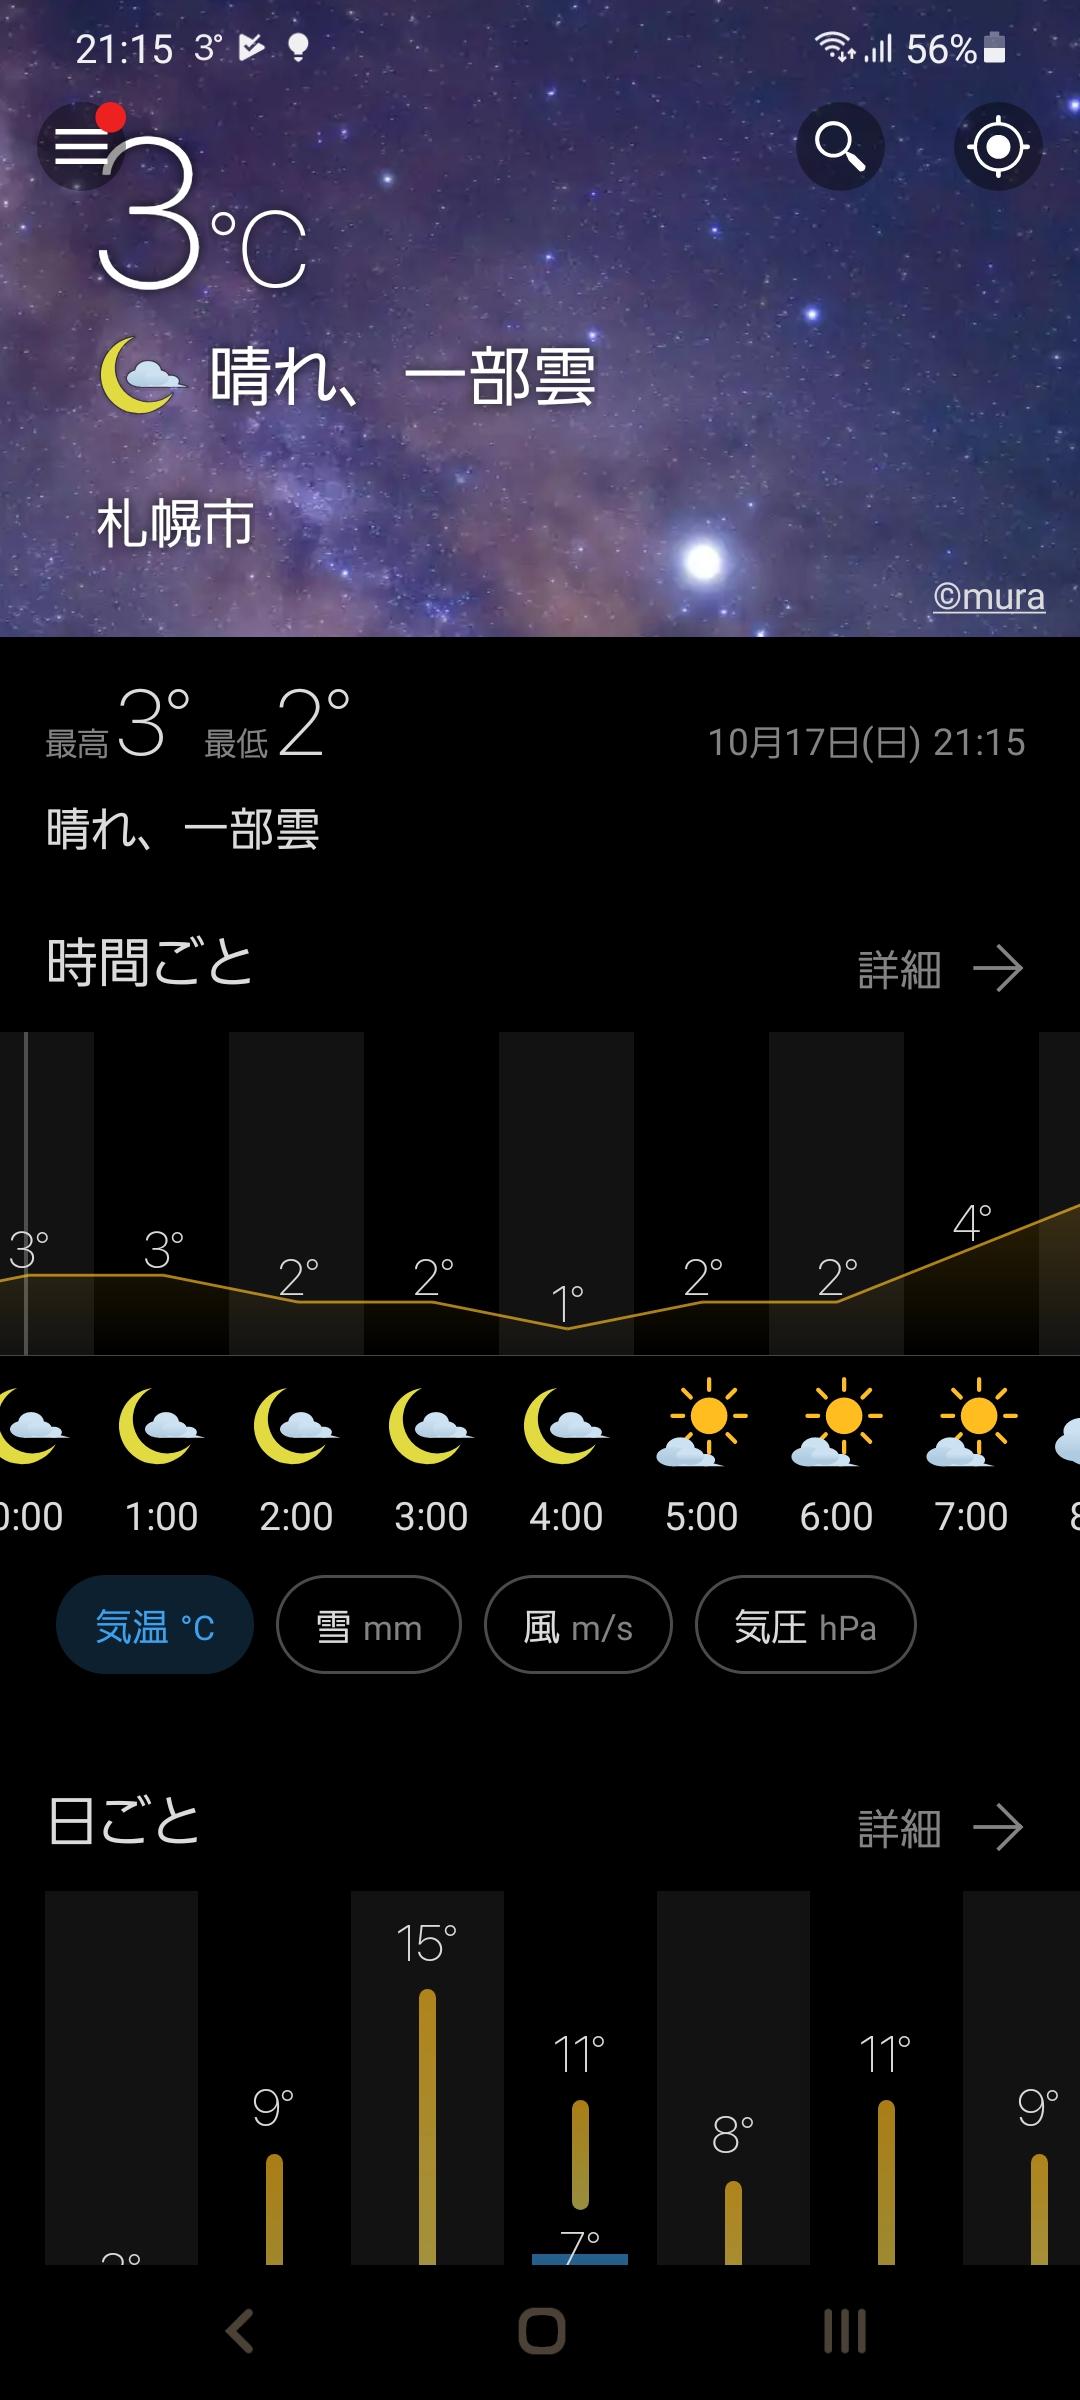 信じますよ。私のアプリなら早朝の気温１℃...